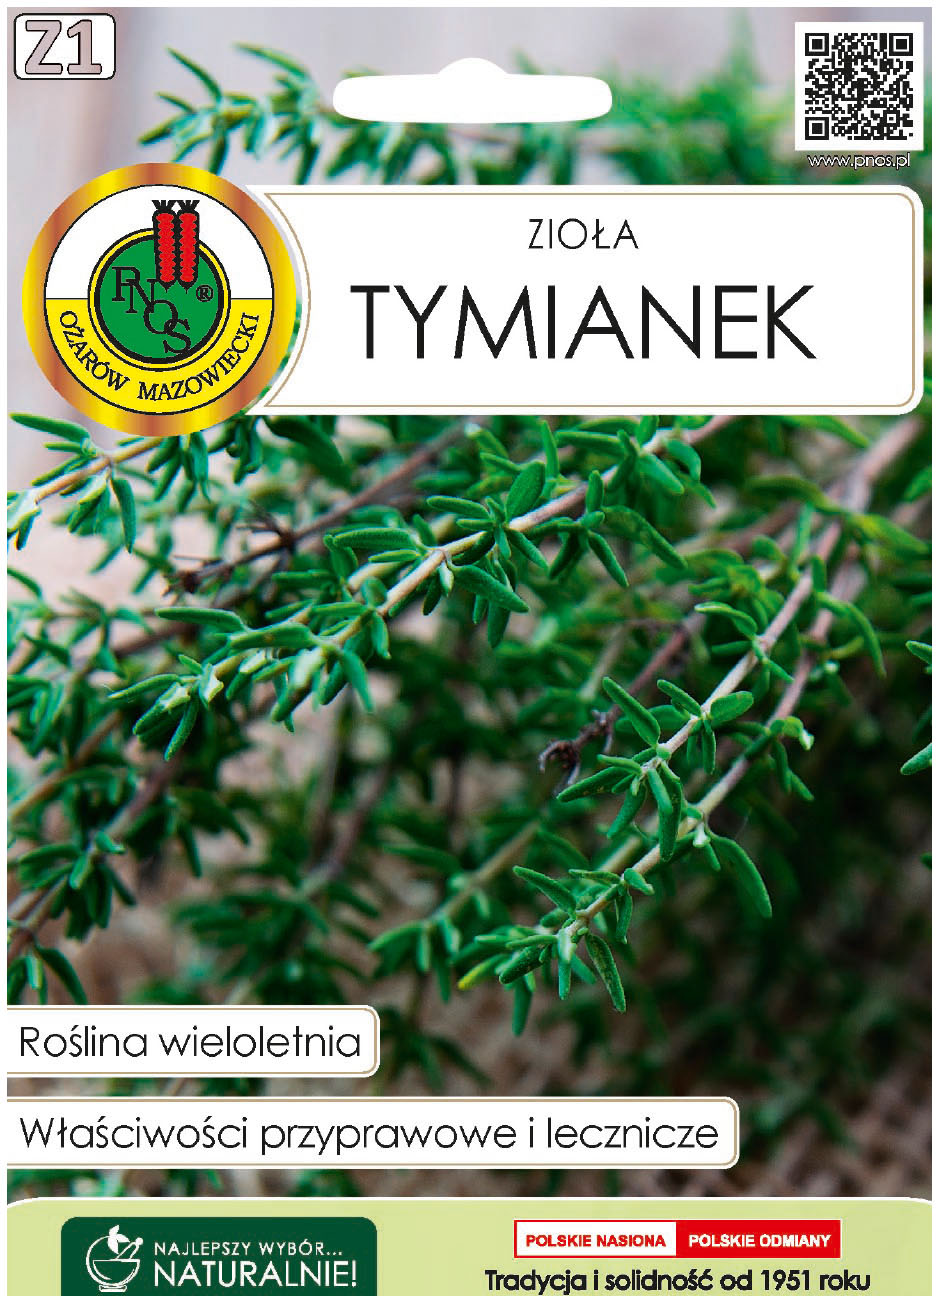 Tymianek Thymus vulgaris właściwy to roślina wieloletnia. Surowcem przyprawowym jest jego ziele, które zawiera olejki eteryczne.